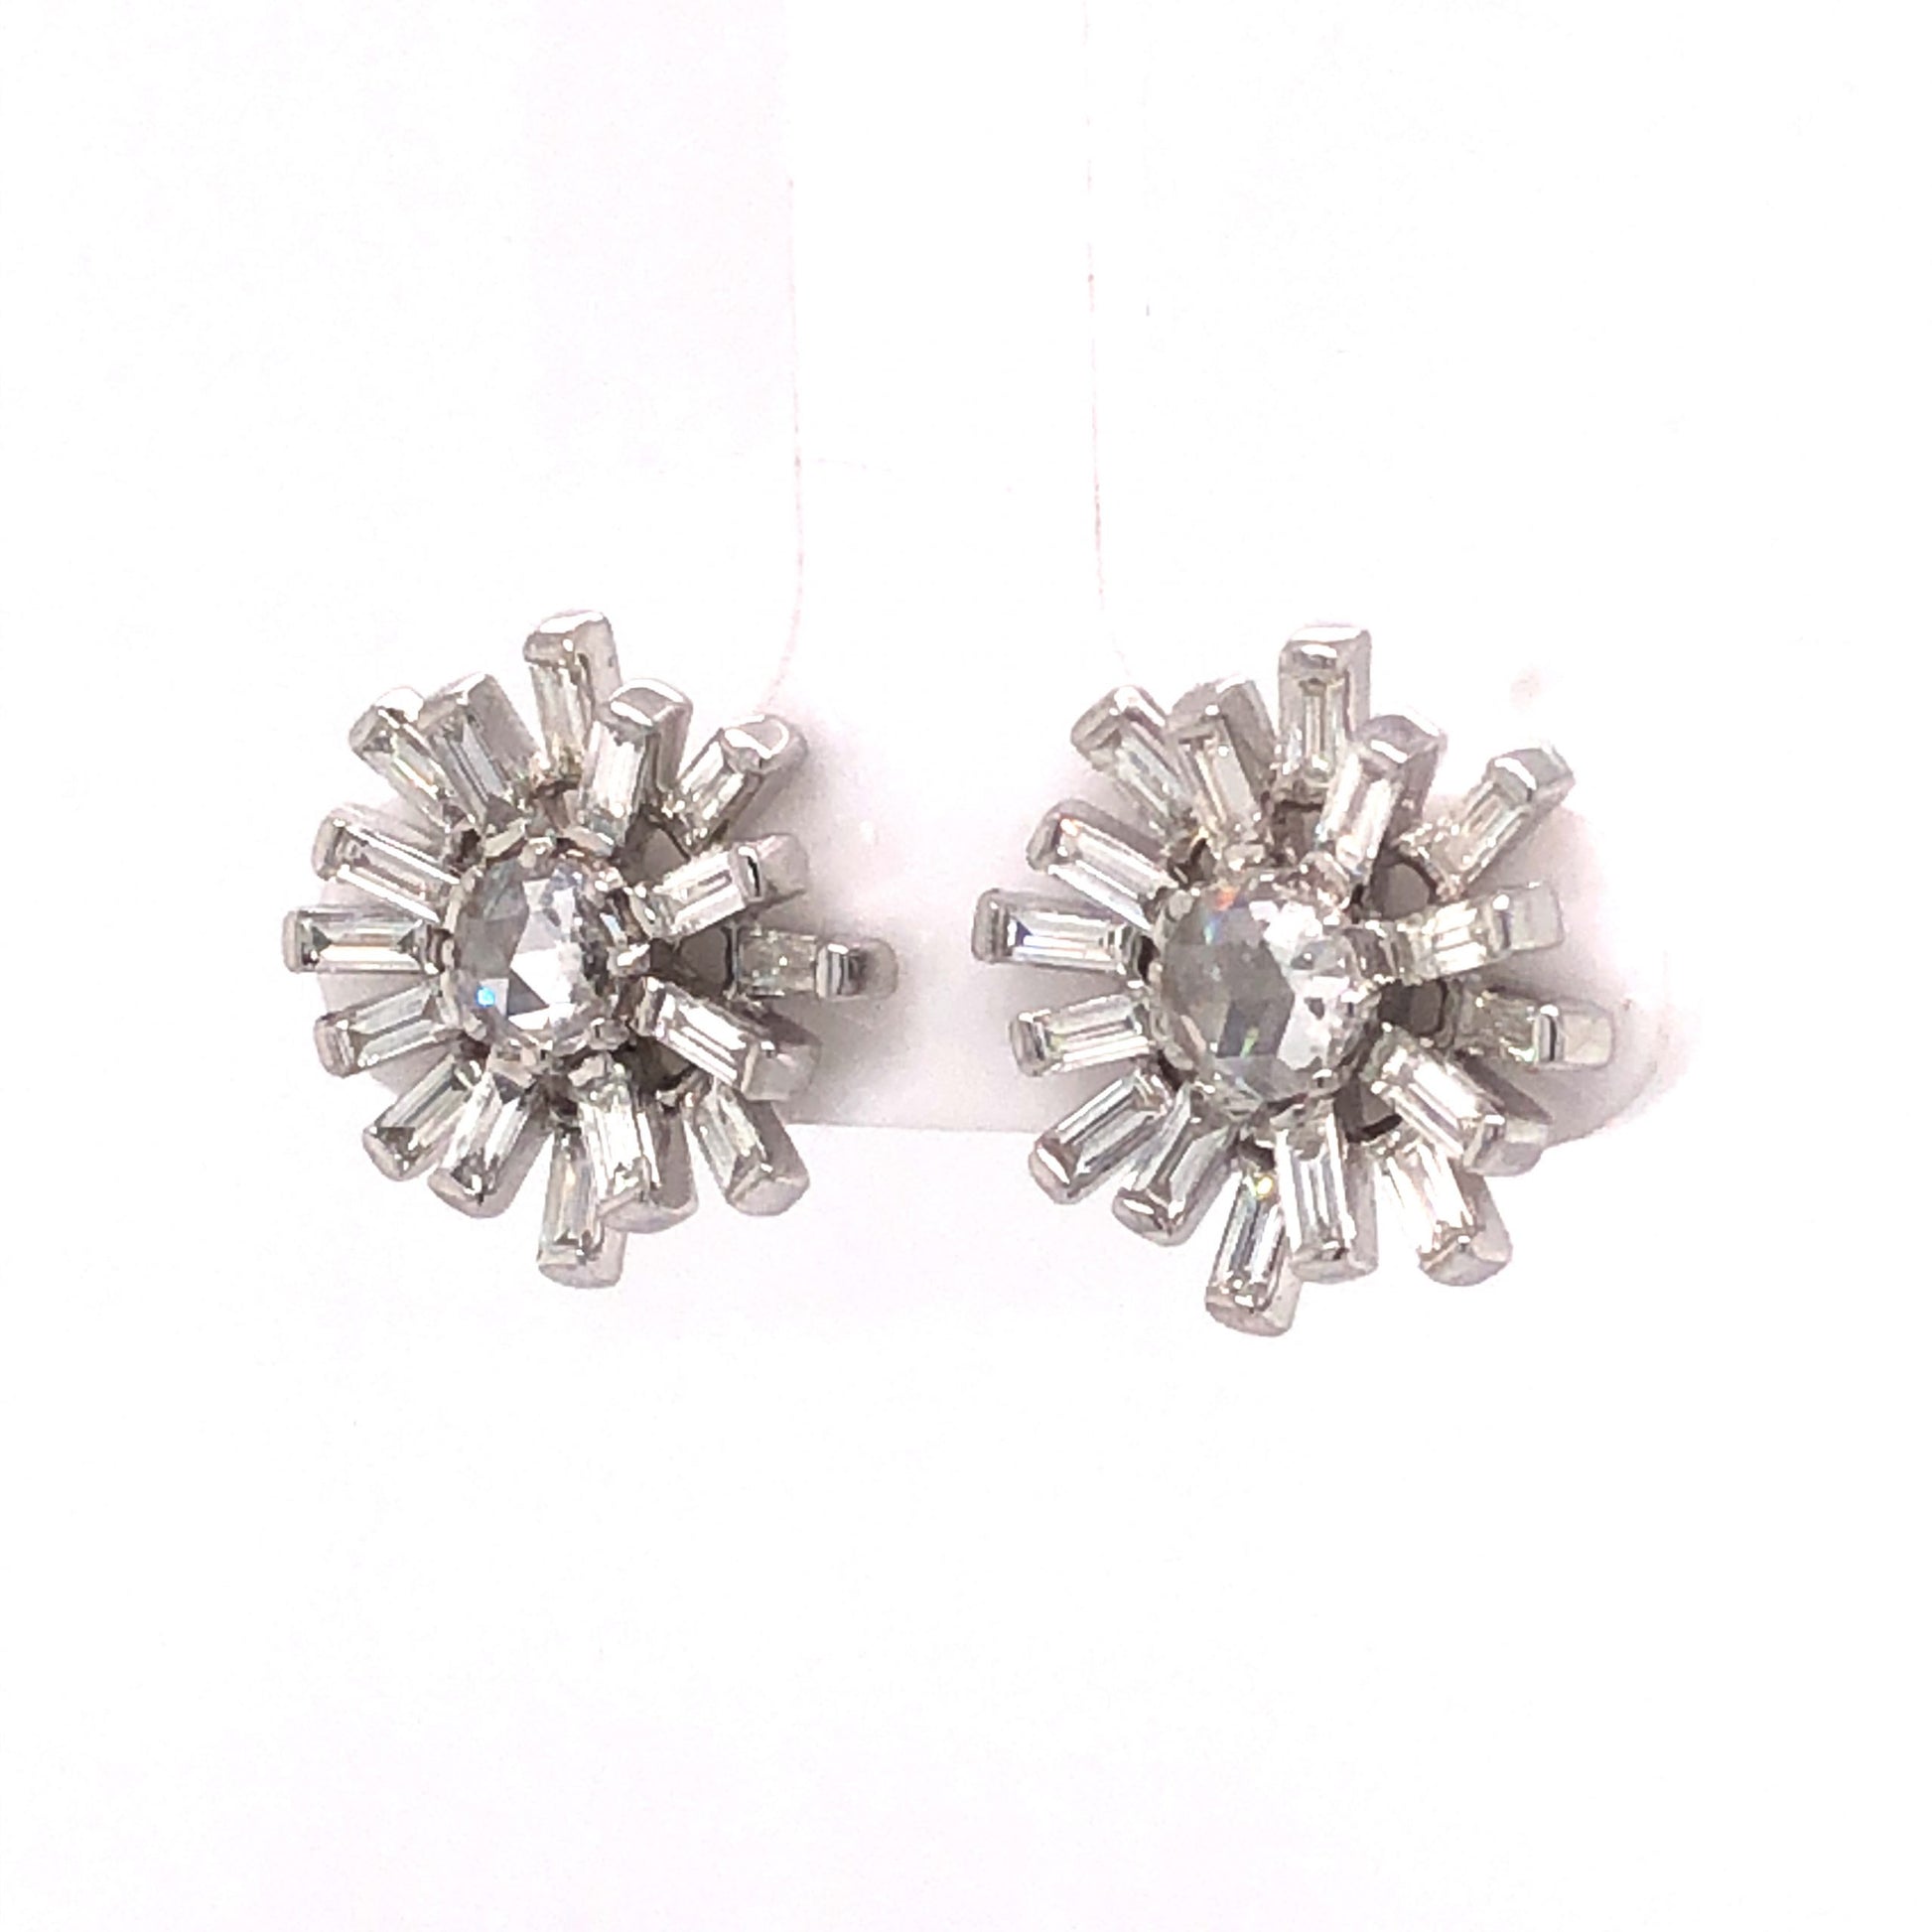 Sunburst Diamond Earring Studs in 18k White GoldComposition: 18 Karat White GoldTotal Diamond Weight: 1.64 ctTotal Gram Weight: 5.4 gInscription: 18k